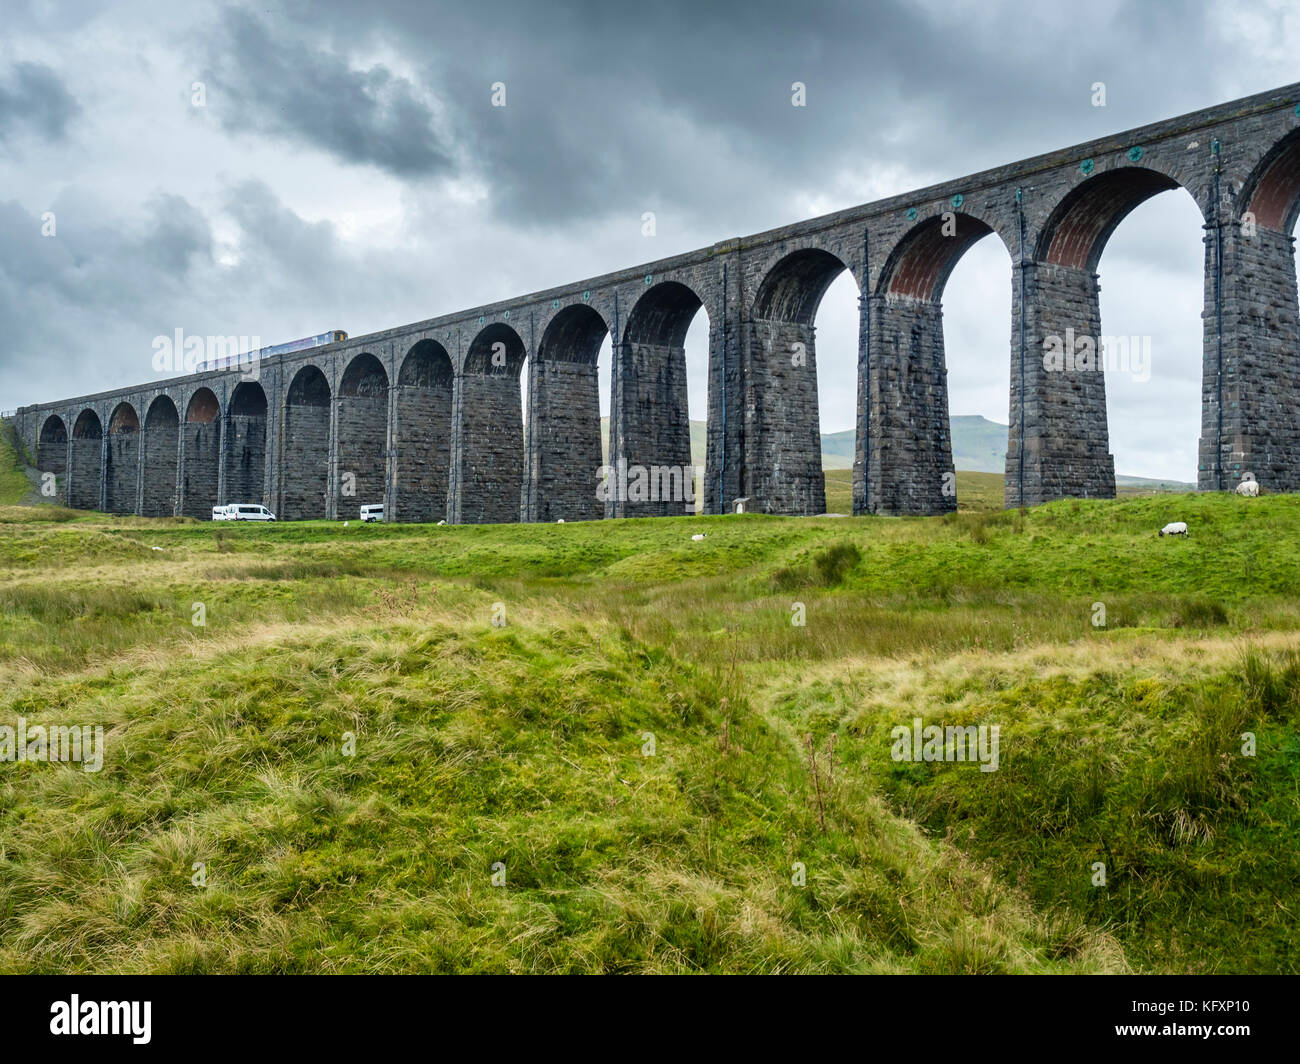 Viaducto Ferroviario destrict ribblehead, valles de Yorkshire, Inglaterra, Gran Bretaña Foto de stock